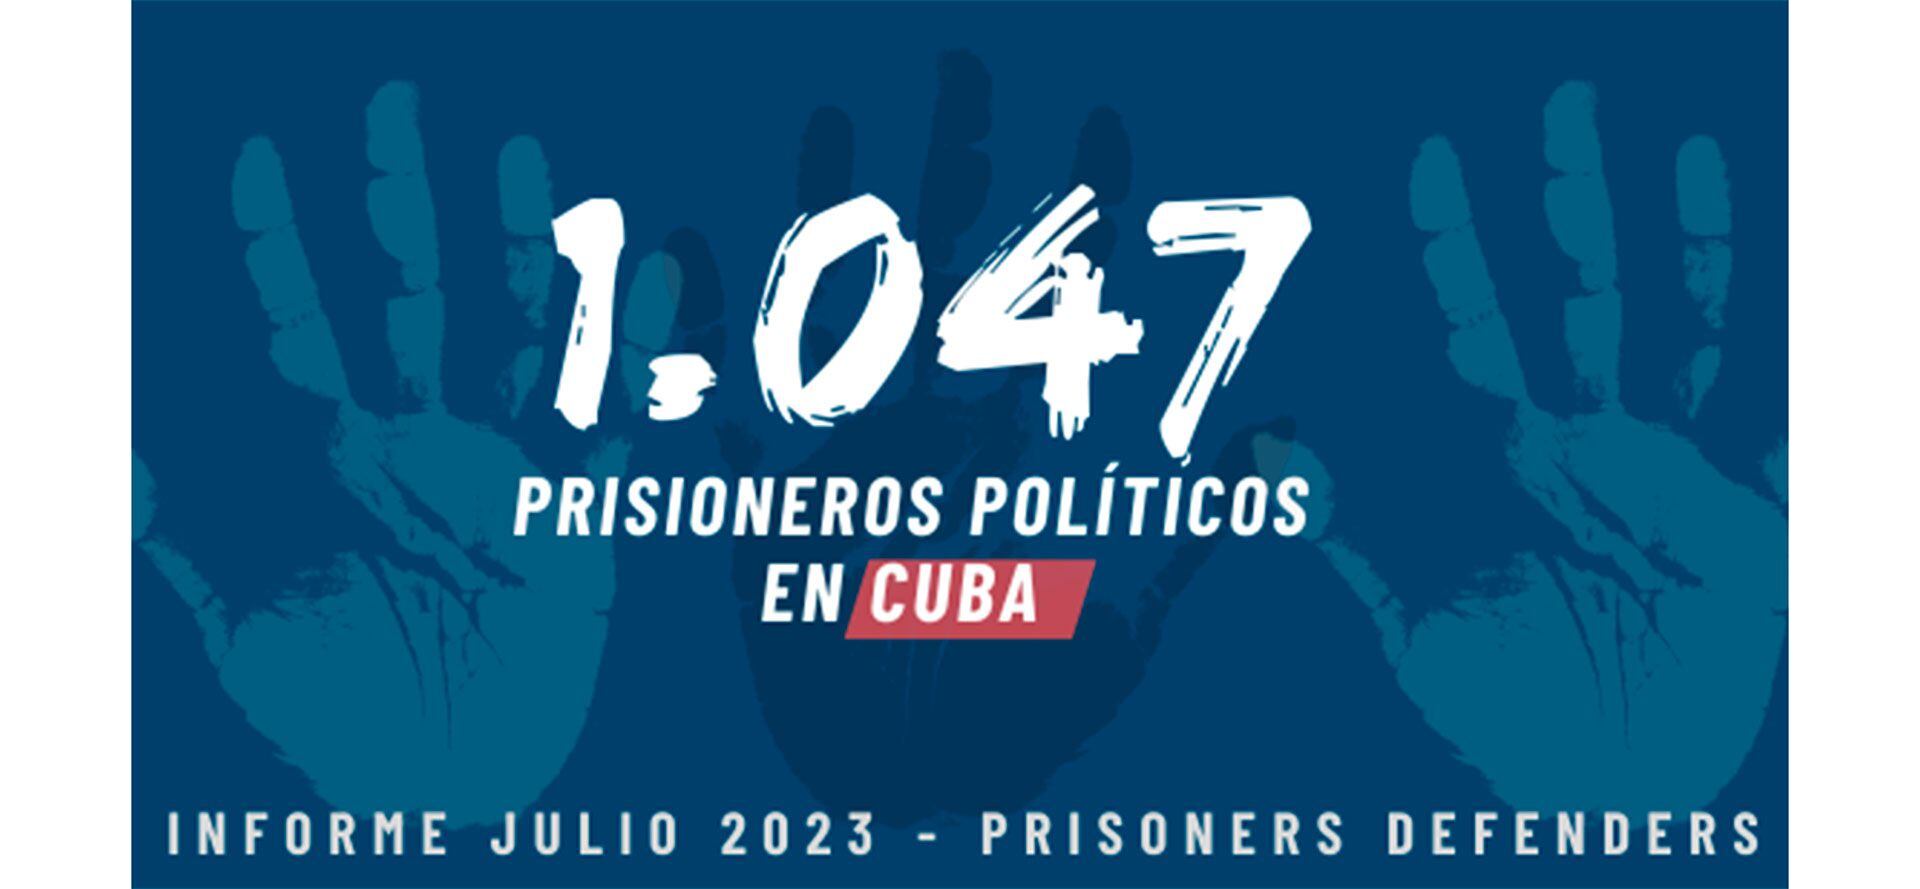 Prisoners Defenders denunció que hay 1.047 presos políticos en Cuba (Crédito: Prisoners Defenders)